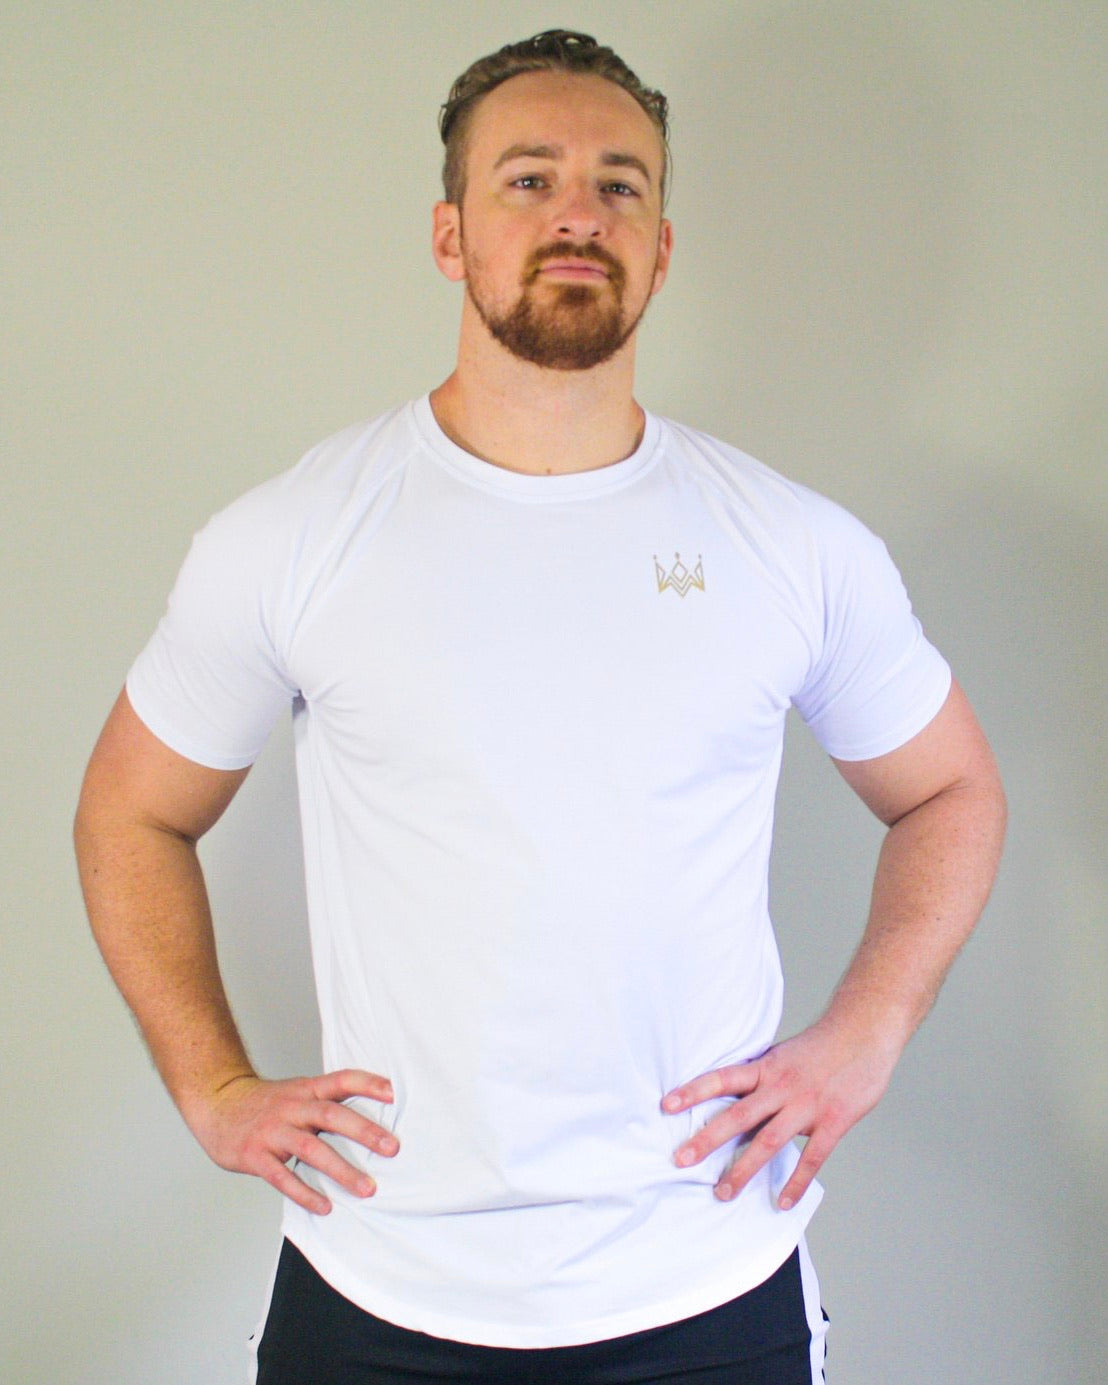 Tunic Performance Shirt - White